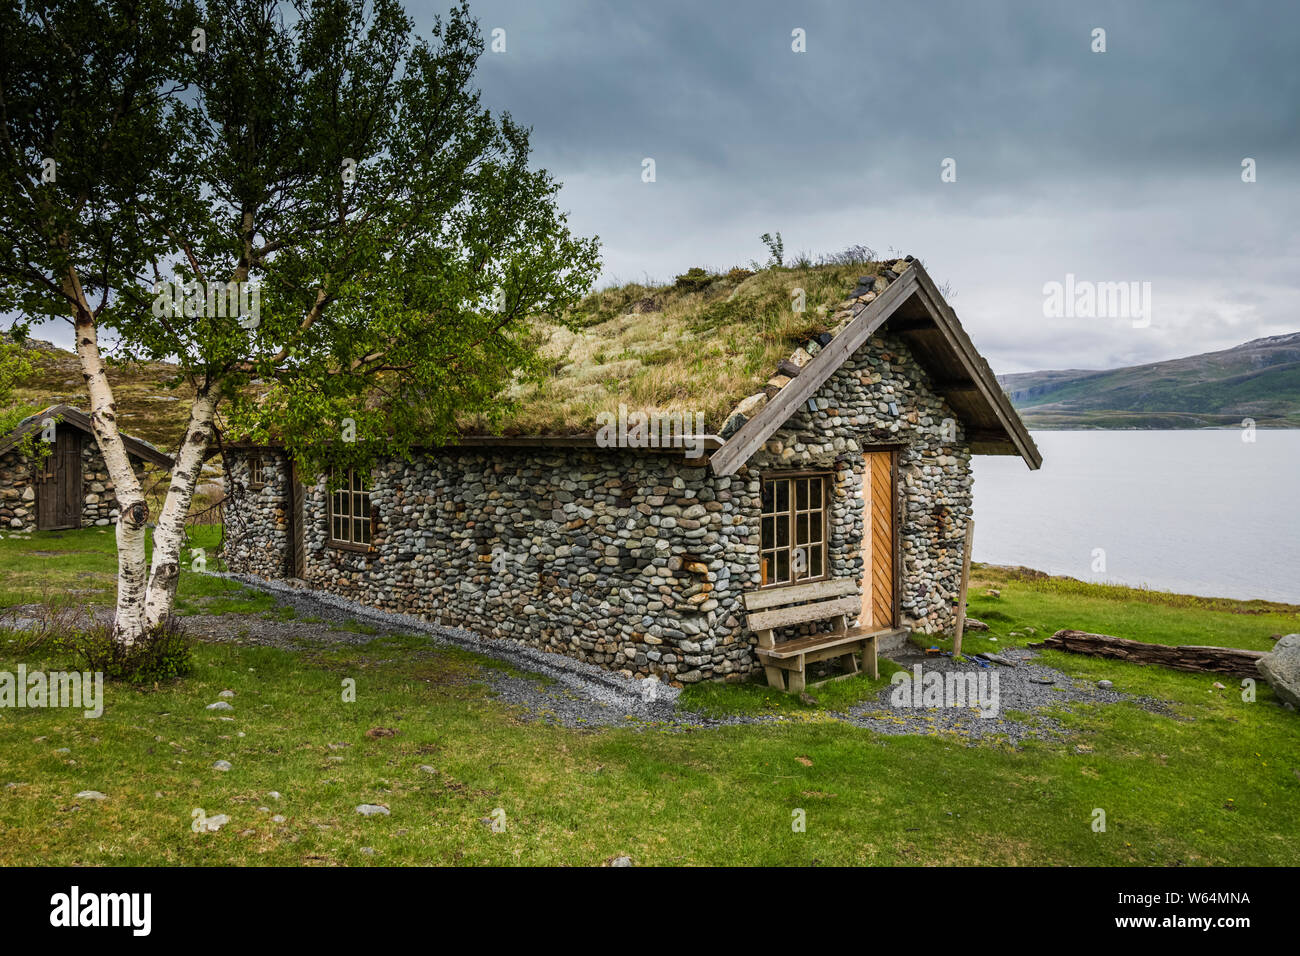 Maison en pierre construite en utilisant les matériaux de la plage sur l'île, la Norvège. Leka Banque D'Images